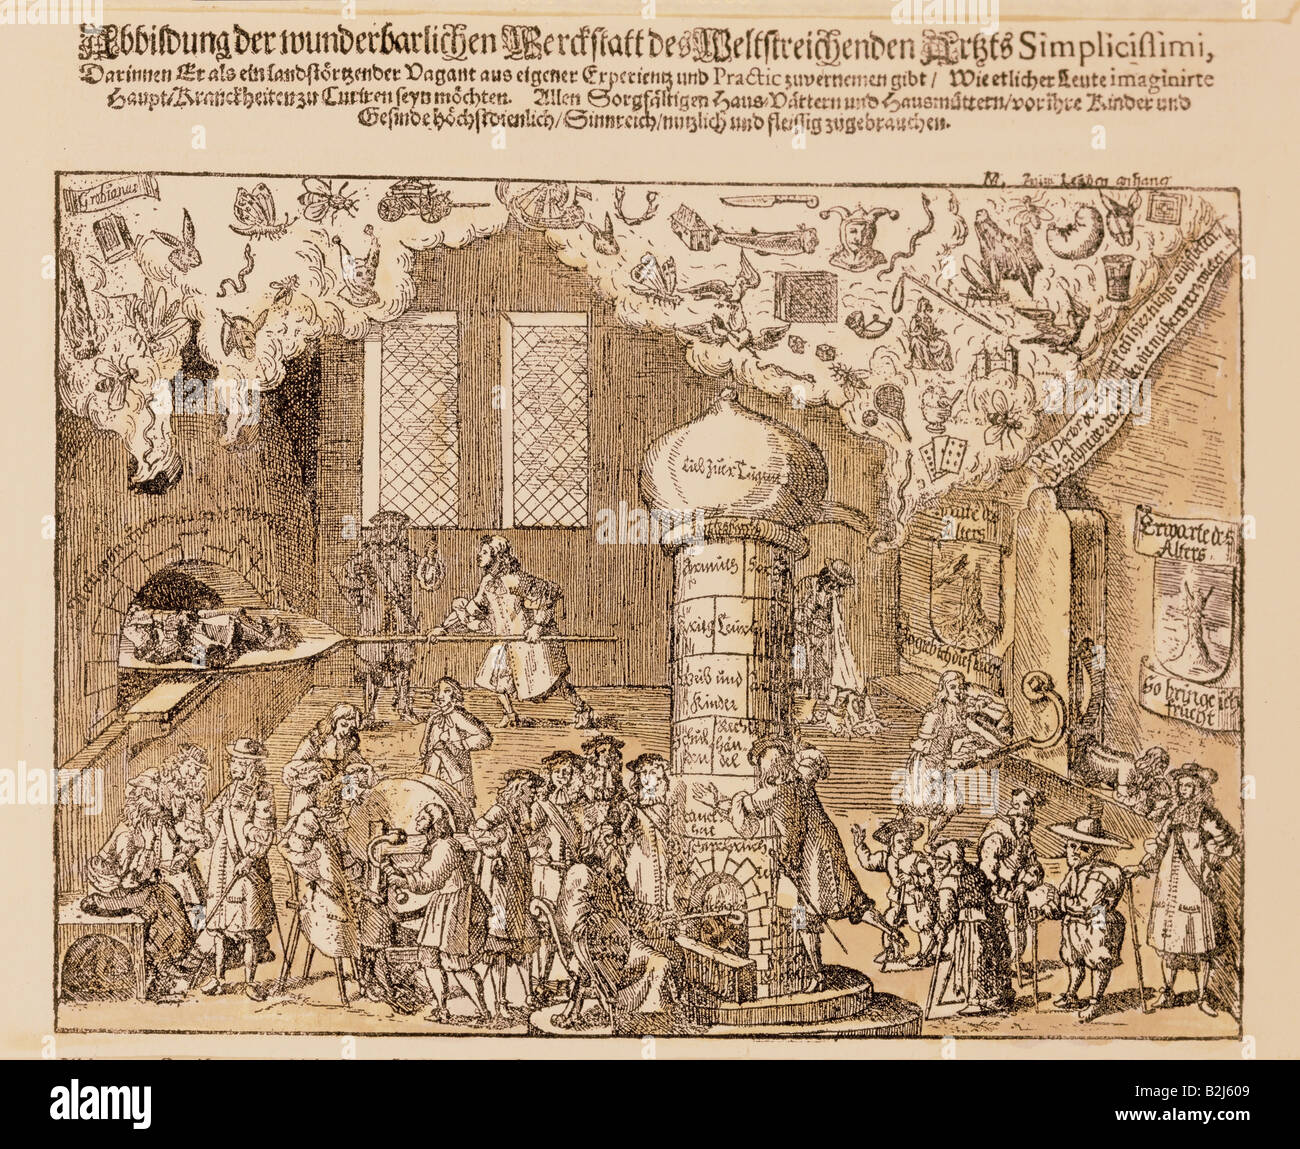 La médecine, le traitement, le laboratoire du médecin miraculeux Simplicissimi satirique, gravure sur cuivre, l'Allemagne, 17e siècle, collection privée, , n'a pas d'auteur de l'artiste pour être effacé Banque D'Images